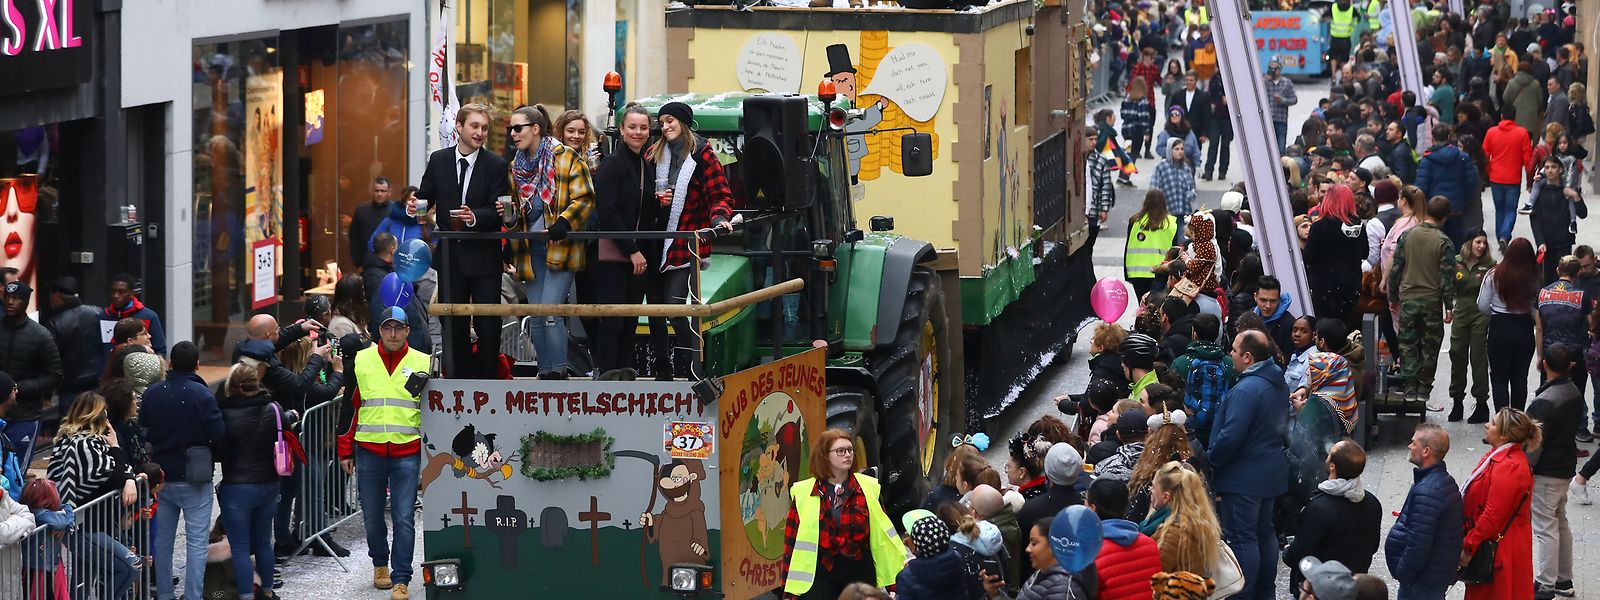 Die Organisation des Karnevalsumzugs ist das größte Event des Syndicat d’Initiative Esch. Es zieht jährlich zwischen 10.000 und 20.000 Besucher nach Esch/Alzette.